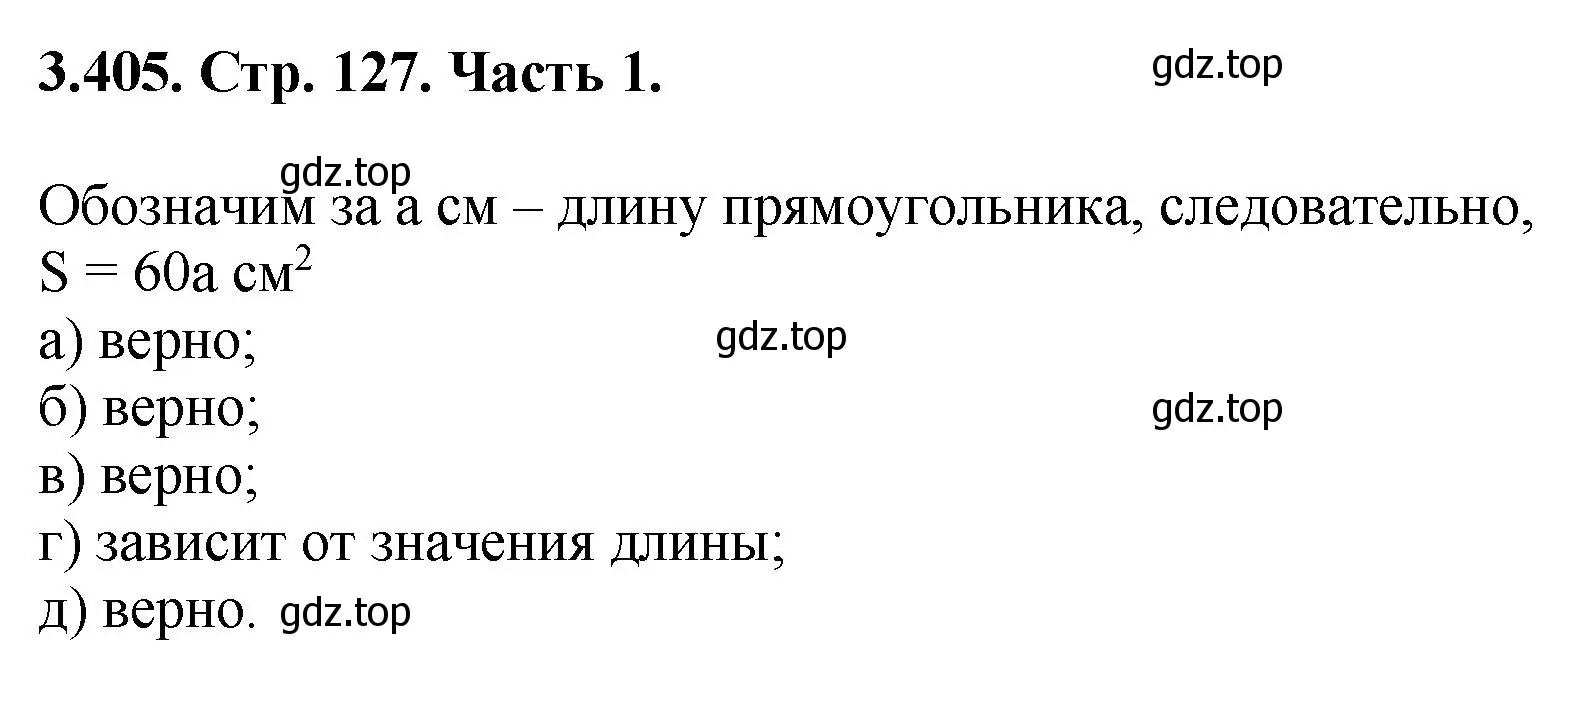 Решение номер 3.405 (страница 127) гдз по математике 5 класс Виленкин, Жохов, учебник 1 часть